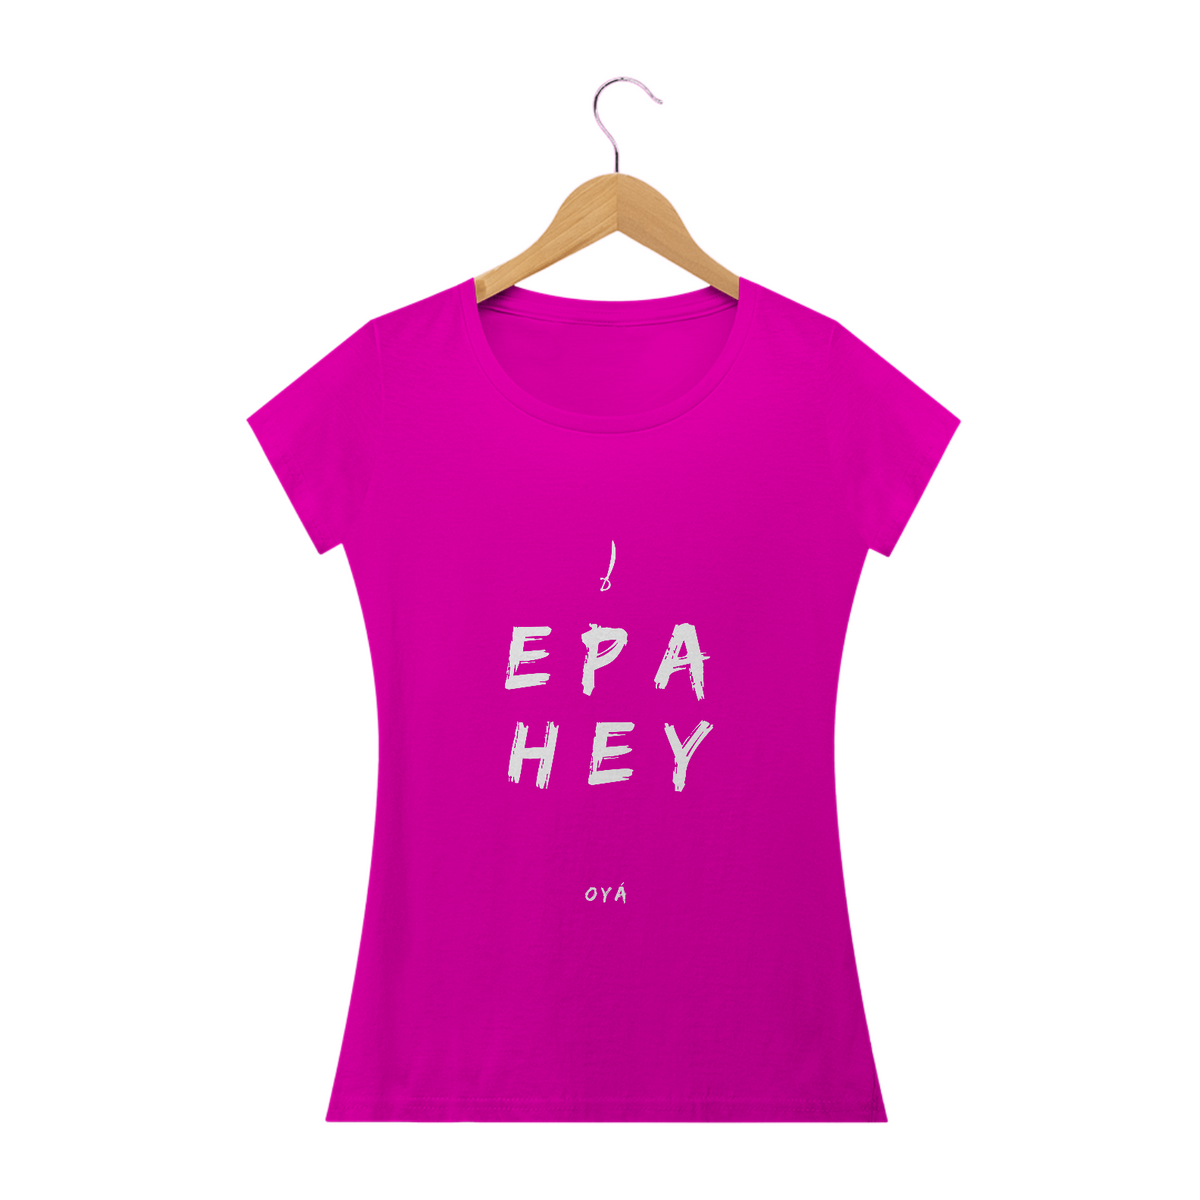 Nome do produto: Camiseta Feminina Oya Saudação  Epa Hey Oyá  